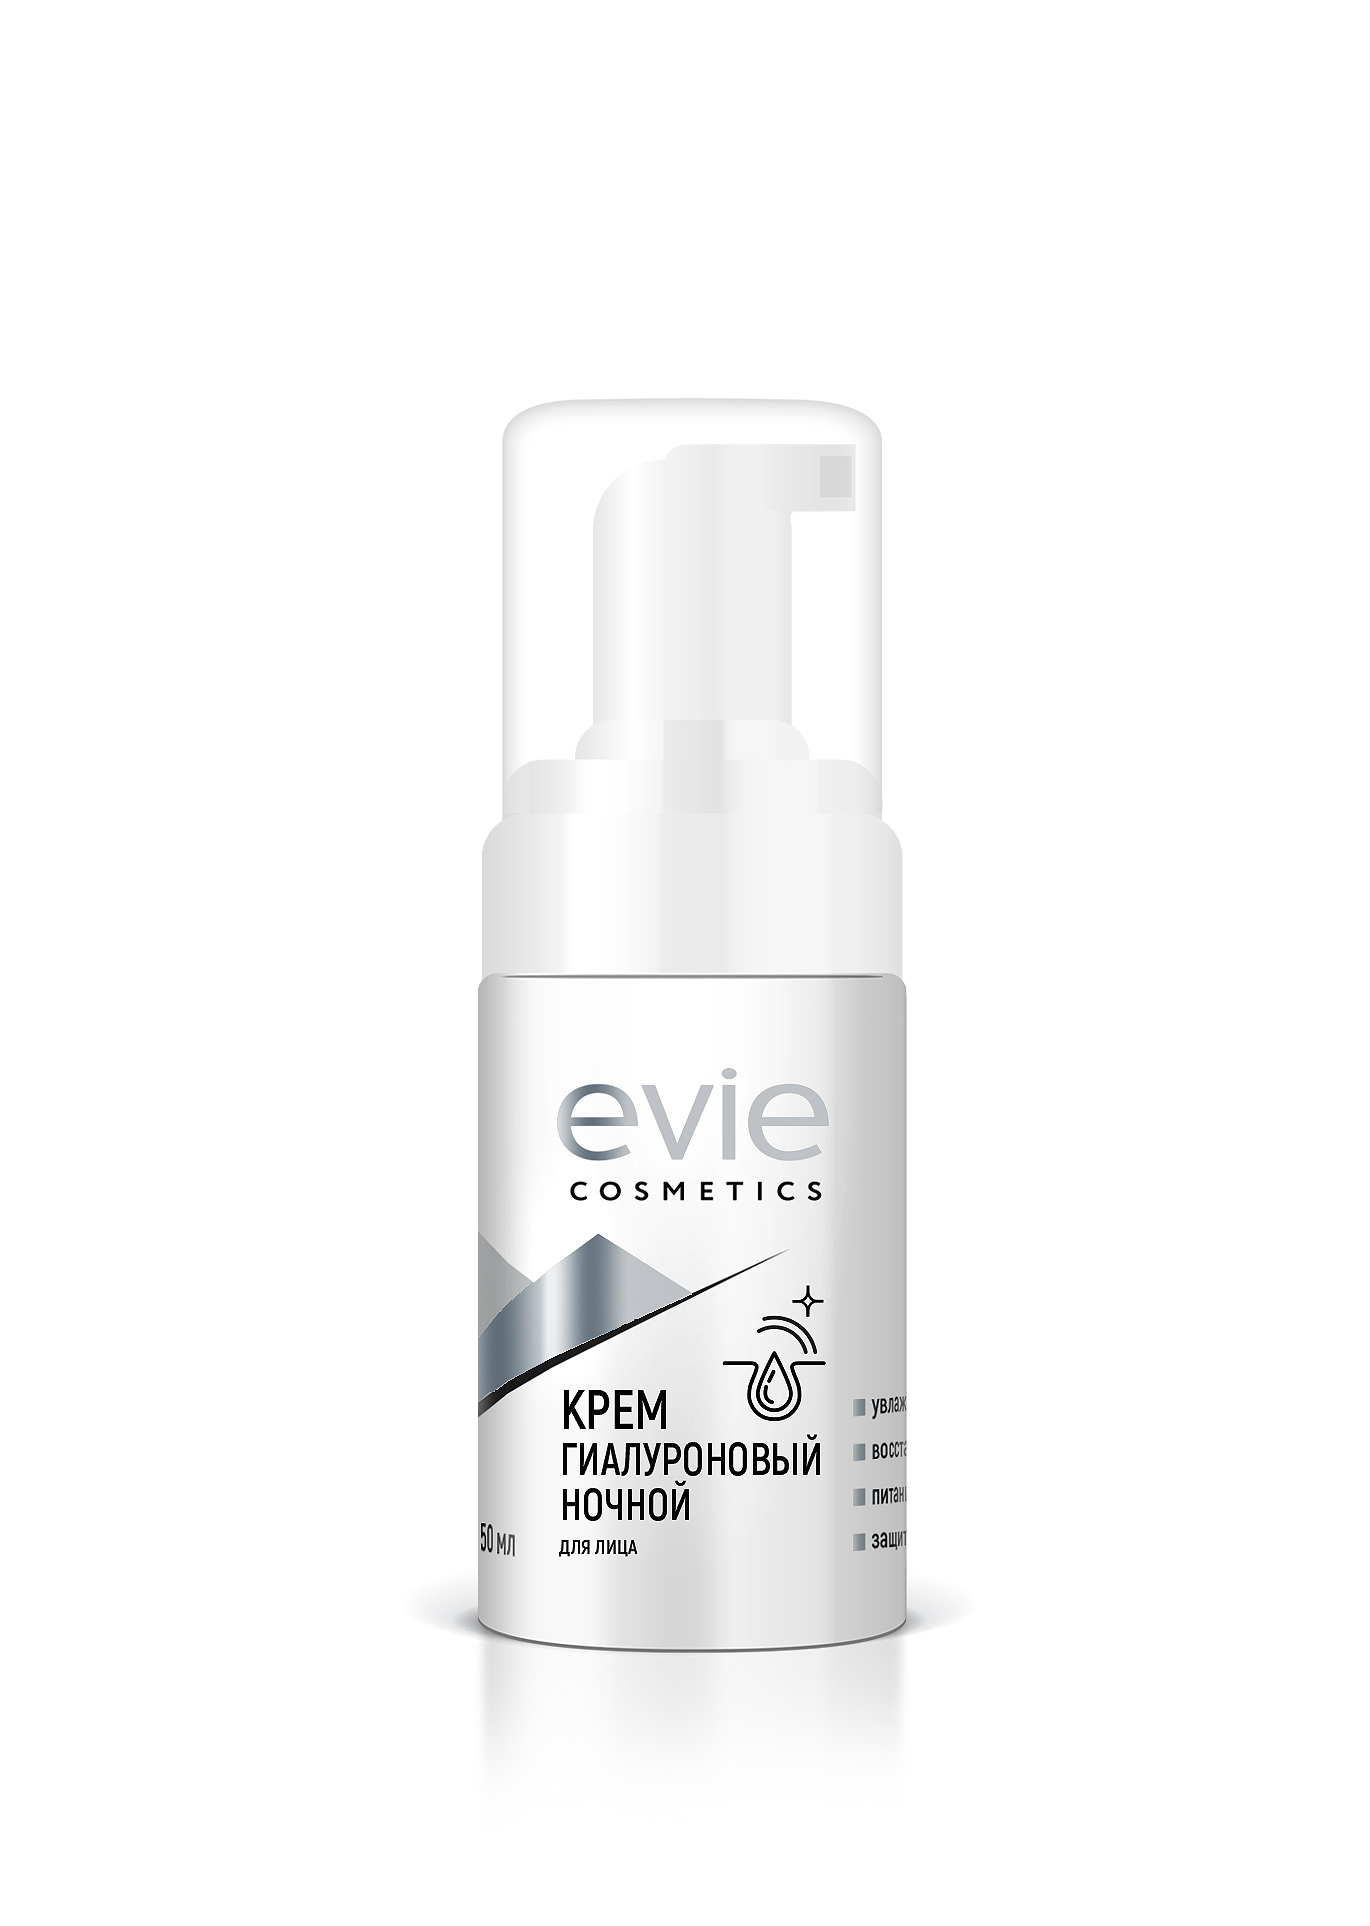 Evie cosmetics крем гиалуроновый ночной для лица 50 мл